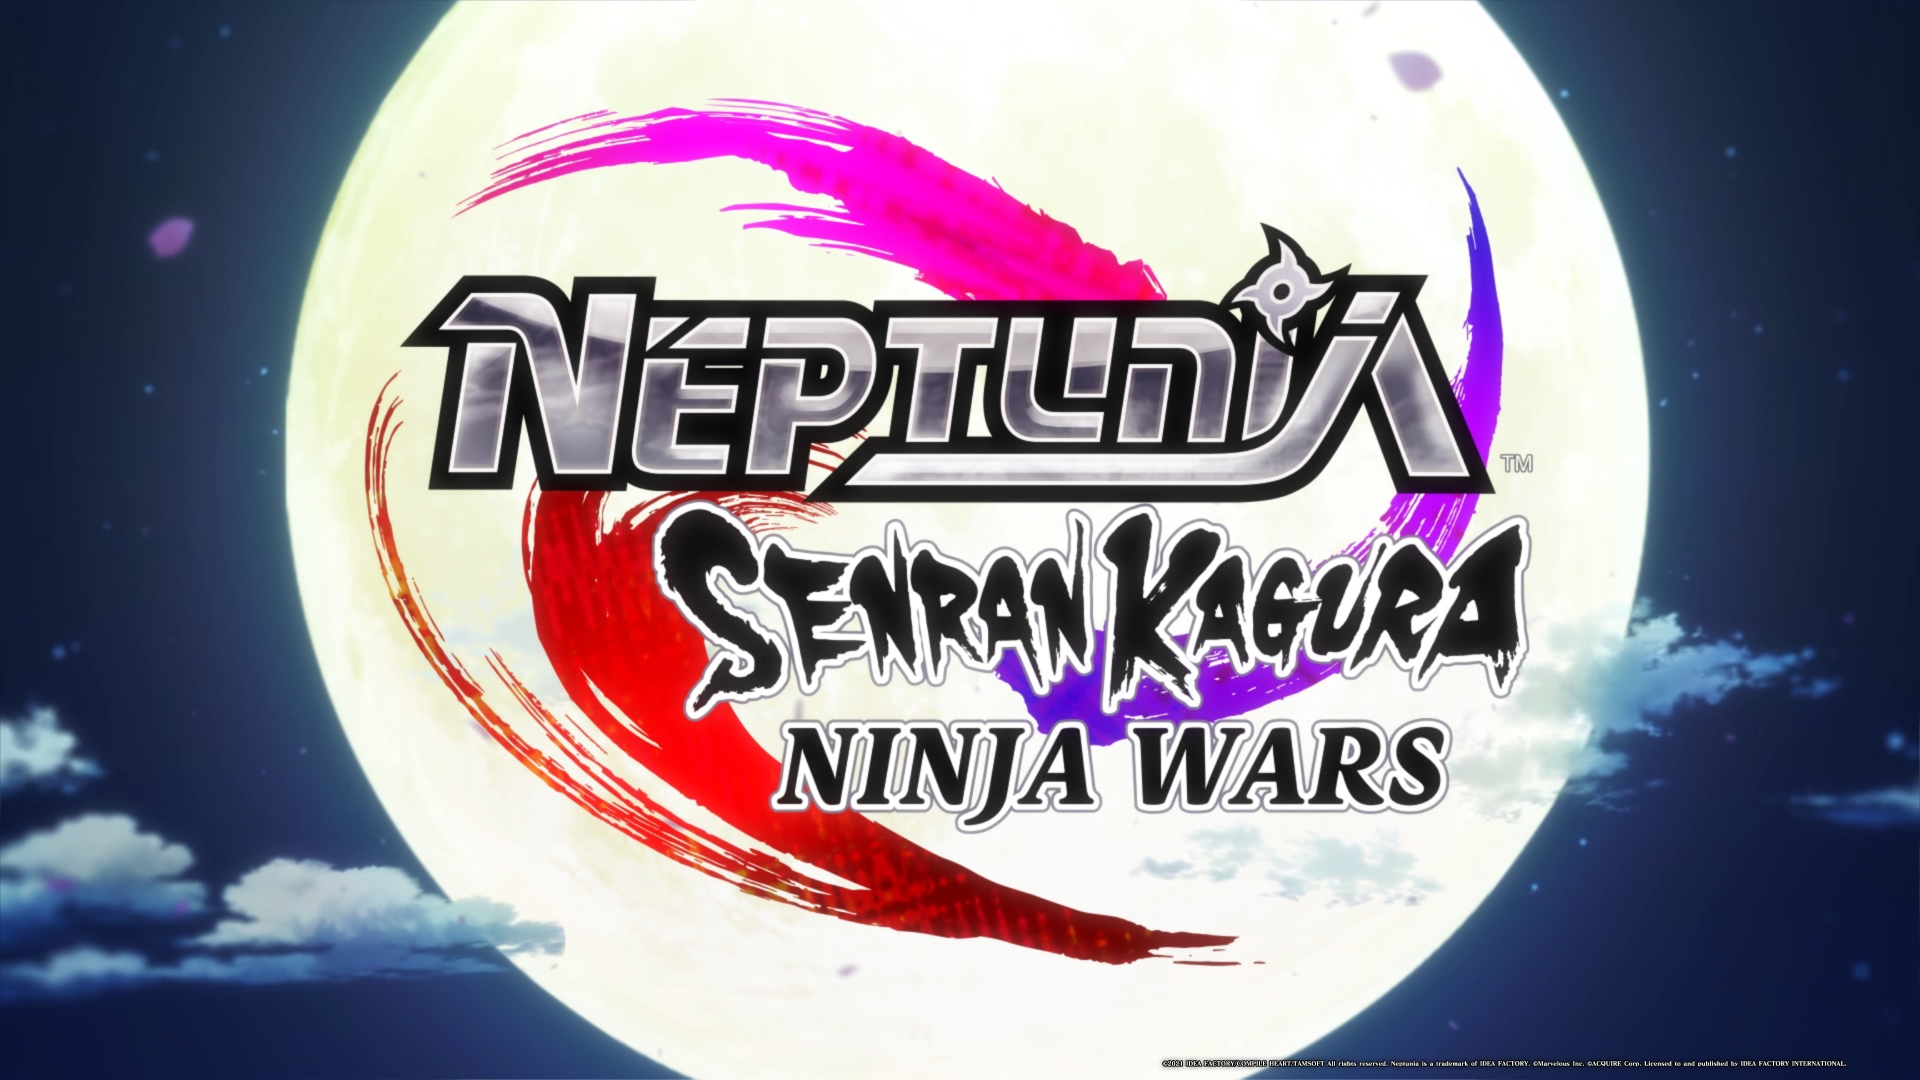 Neptunia X Senran Kagura PS4 Review - Neppin' Shinobi Unite